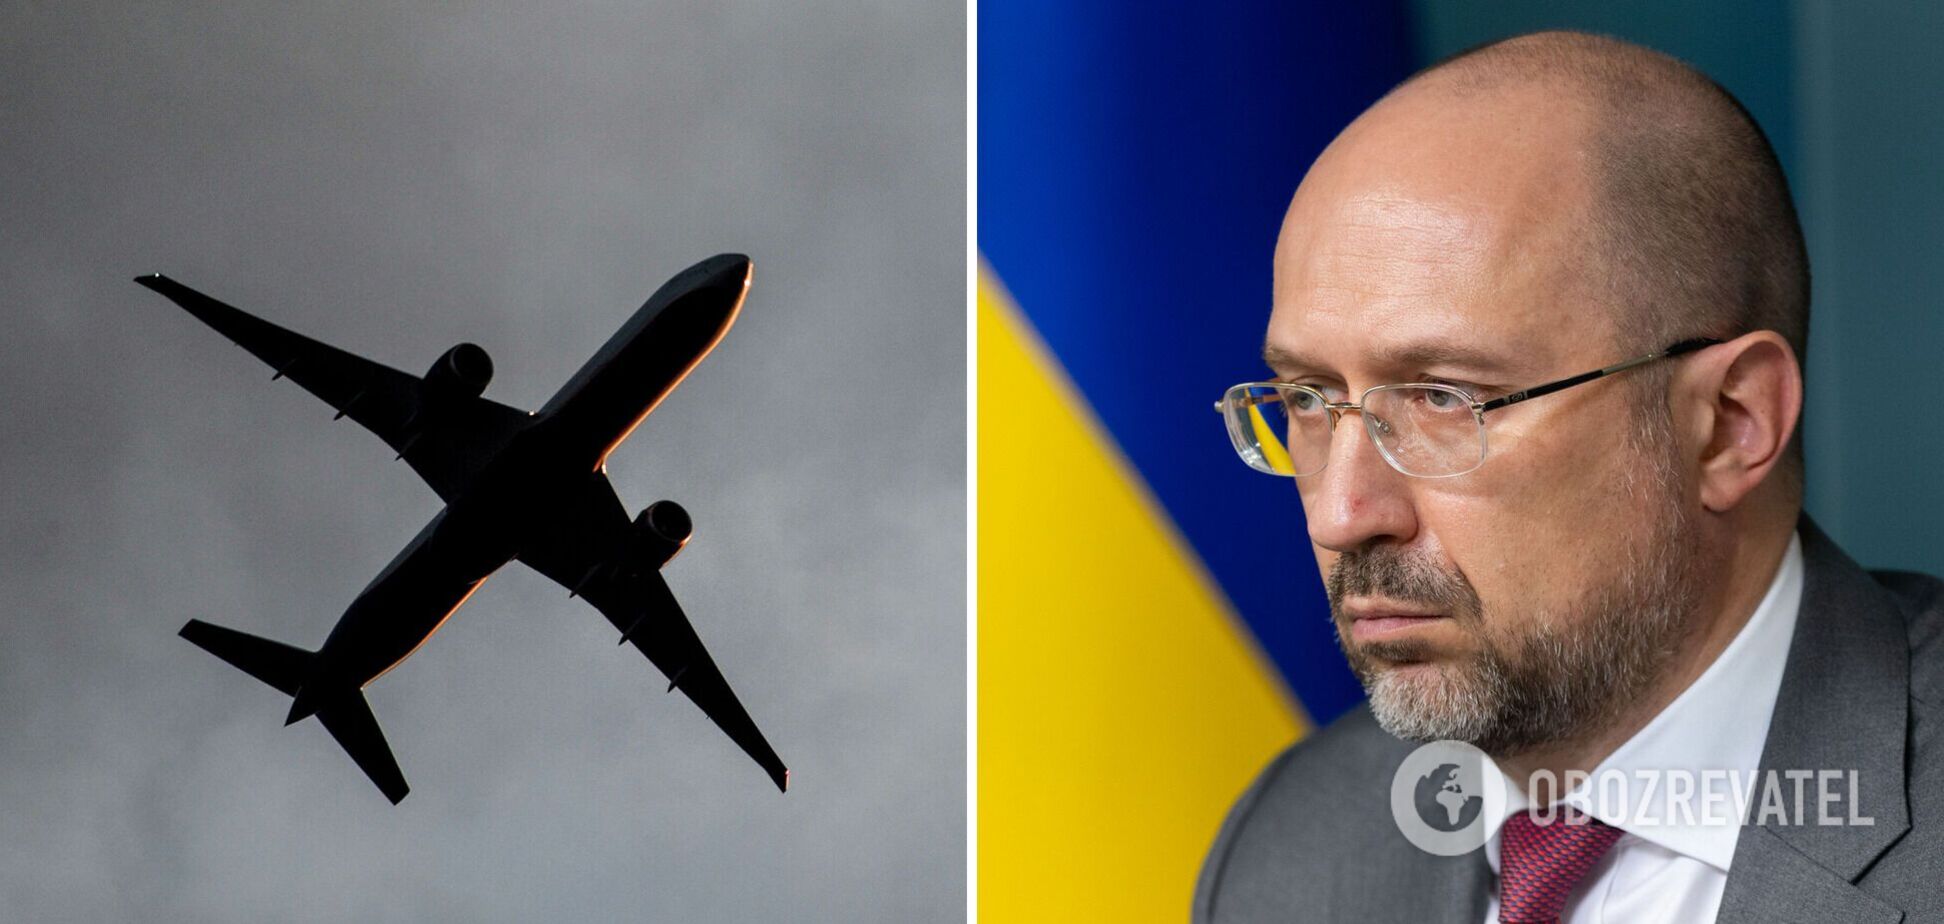 Самолеты продолжат летать над Украиной: Кабмин придумал, как обезопасить авиаперевозчиков